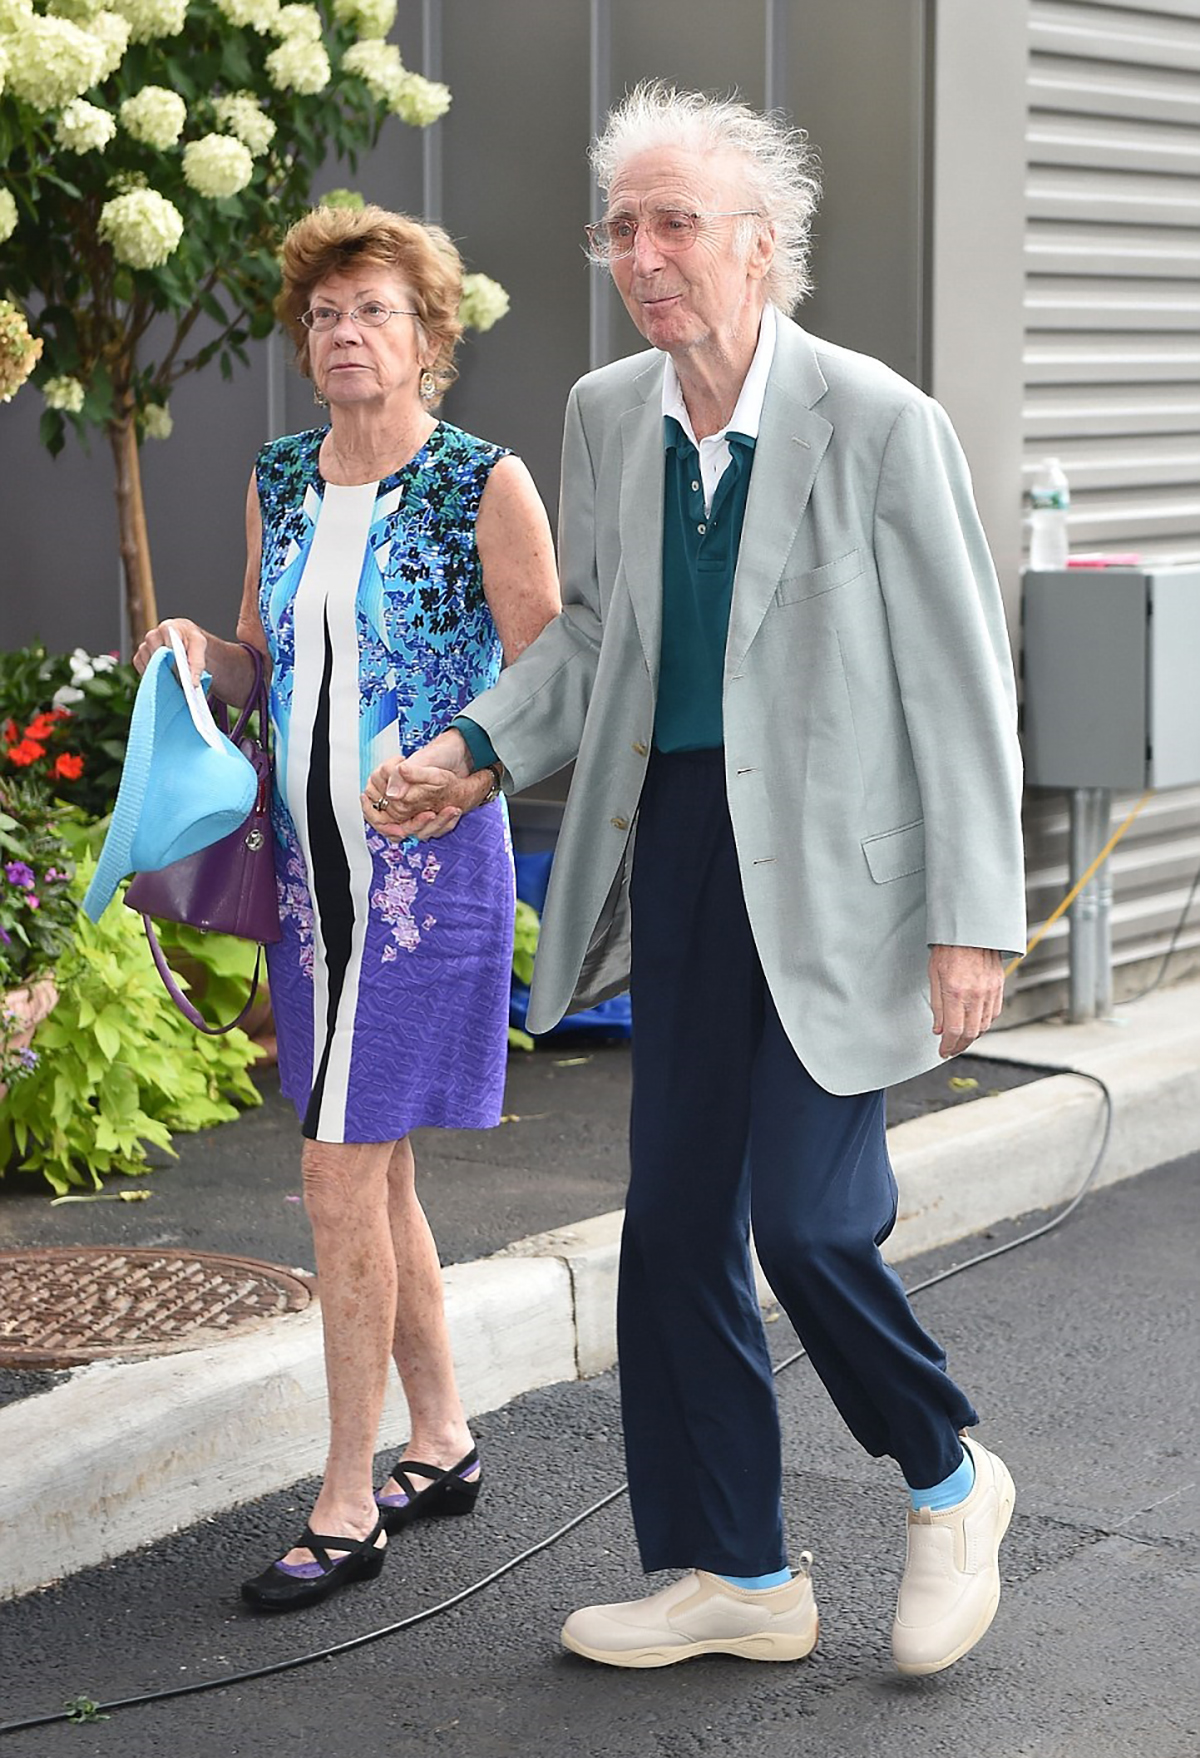 Gene Wilder with his wife Karen Boyer attending the US Open, in 2015.